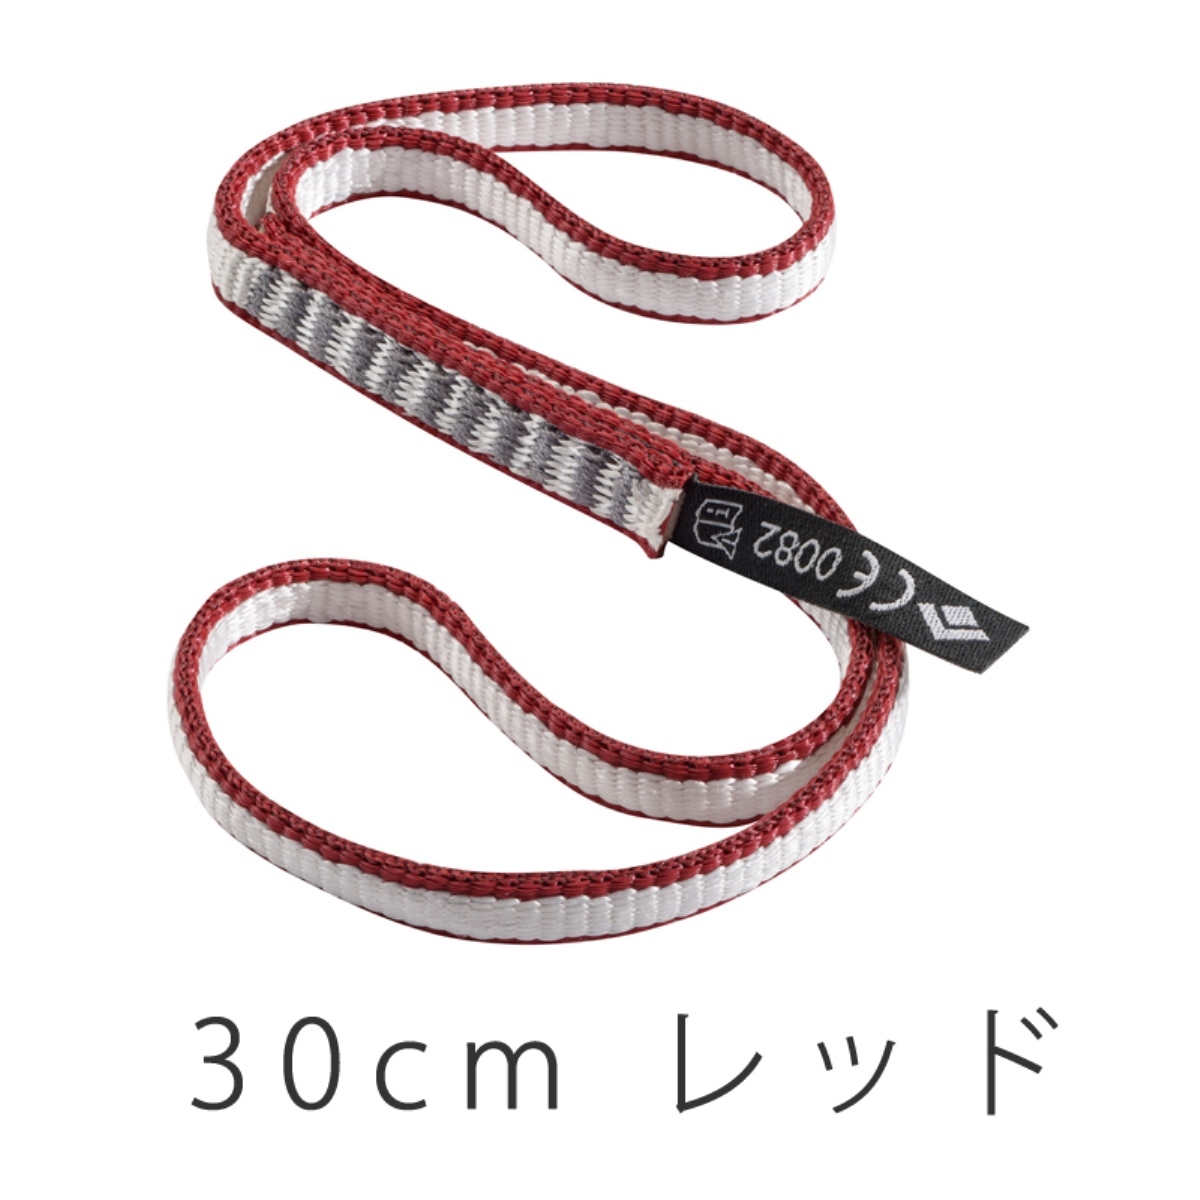 ブラックダイヤモンド 10mm×30cm ダイネックスランナー 778016 BD14050 登山、クライミング用スリングの商品画像